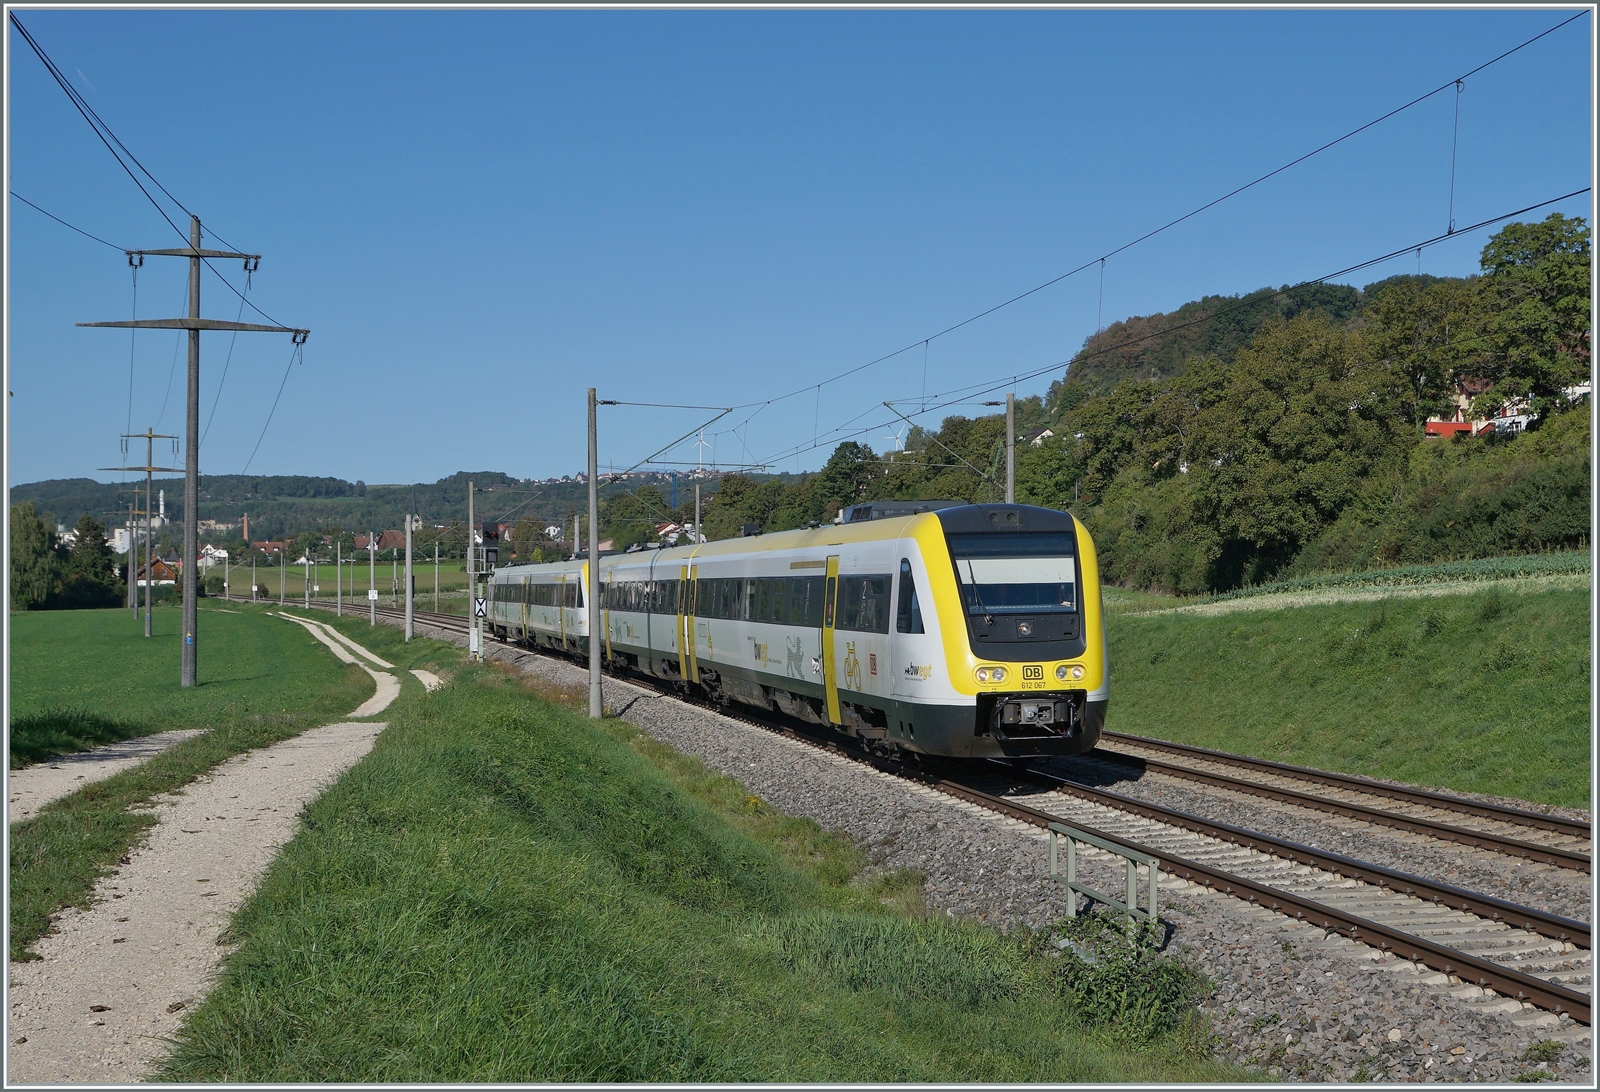 Der DB 612 067 und ein weiterer sind kurz nach dem Passieren der Grenze bei Bietingen auf dem Weg nach Singen.

19. September 2022